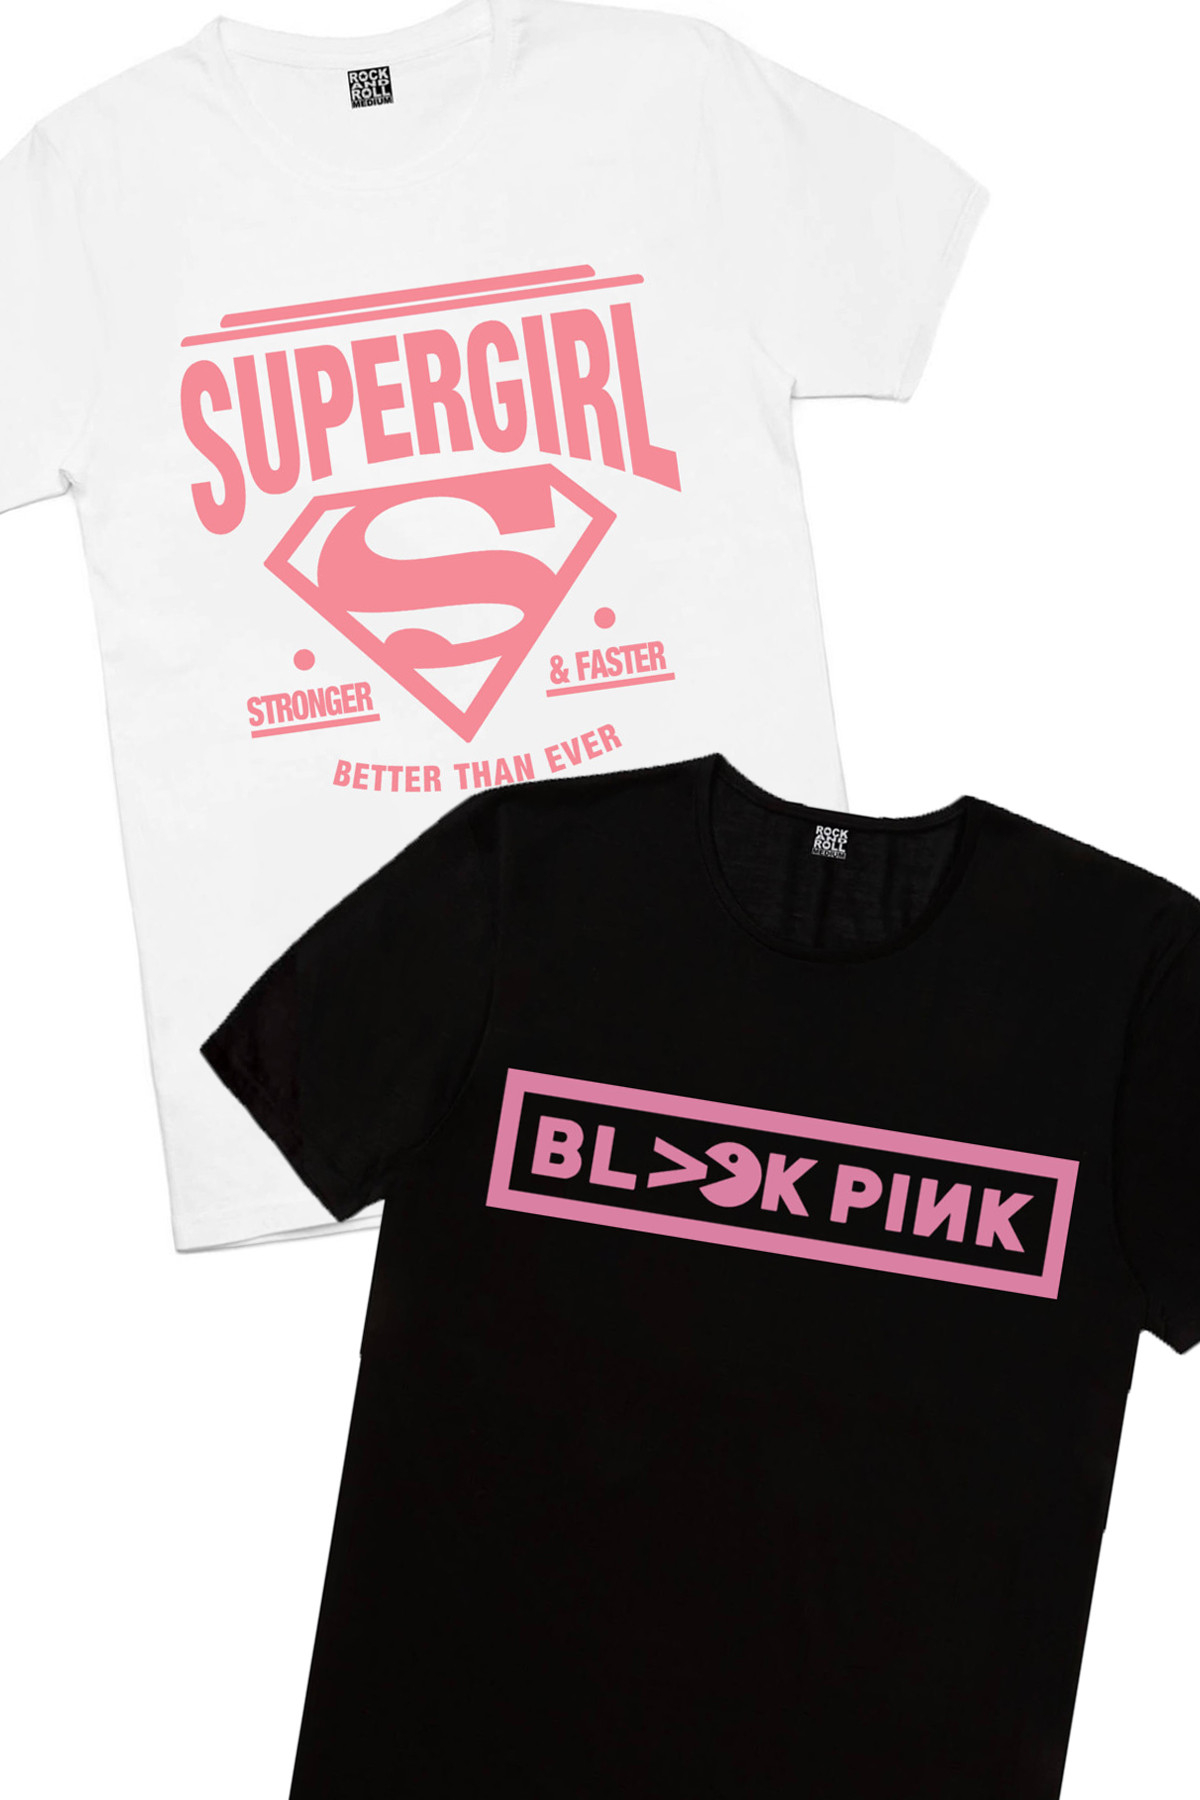 Süperabla Beyaz, Blackpink Pac Kadın 2'li Eko Paket T-shirt